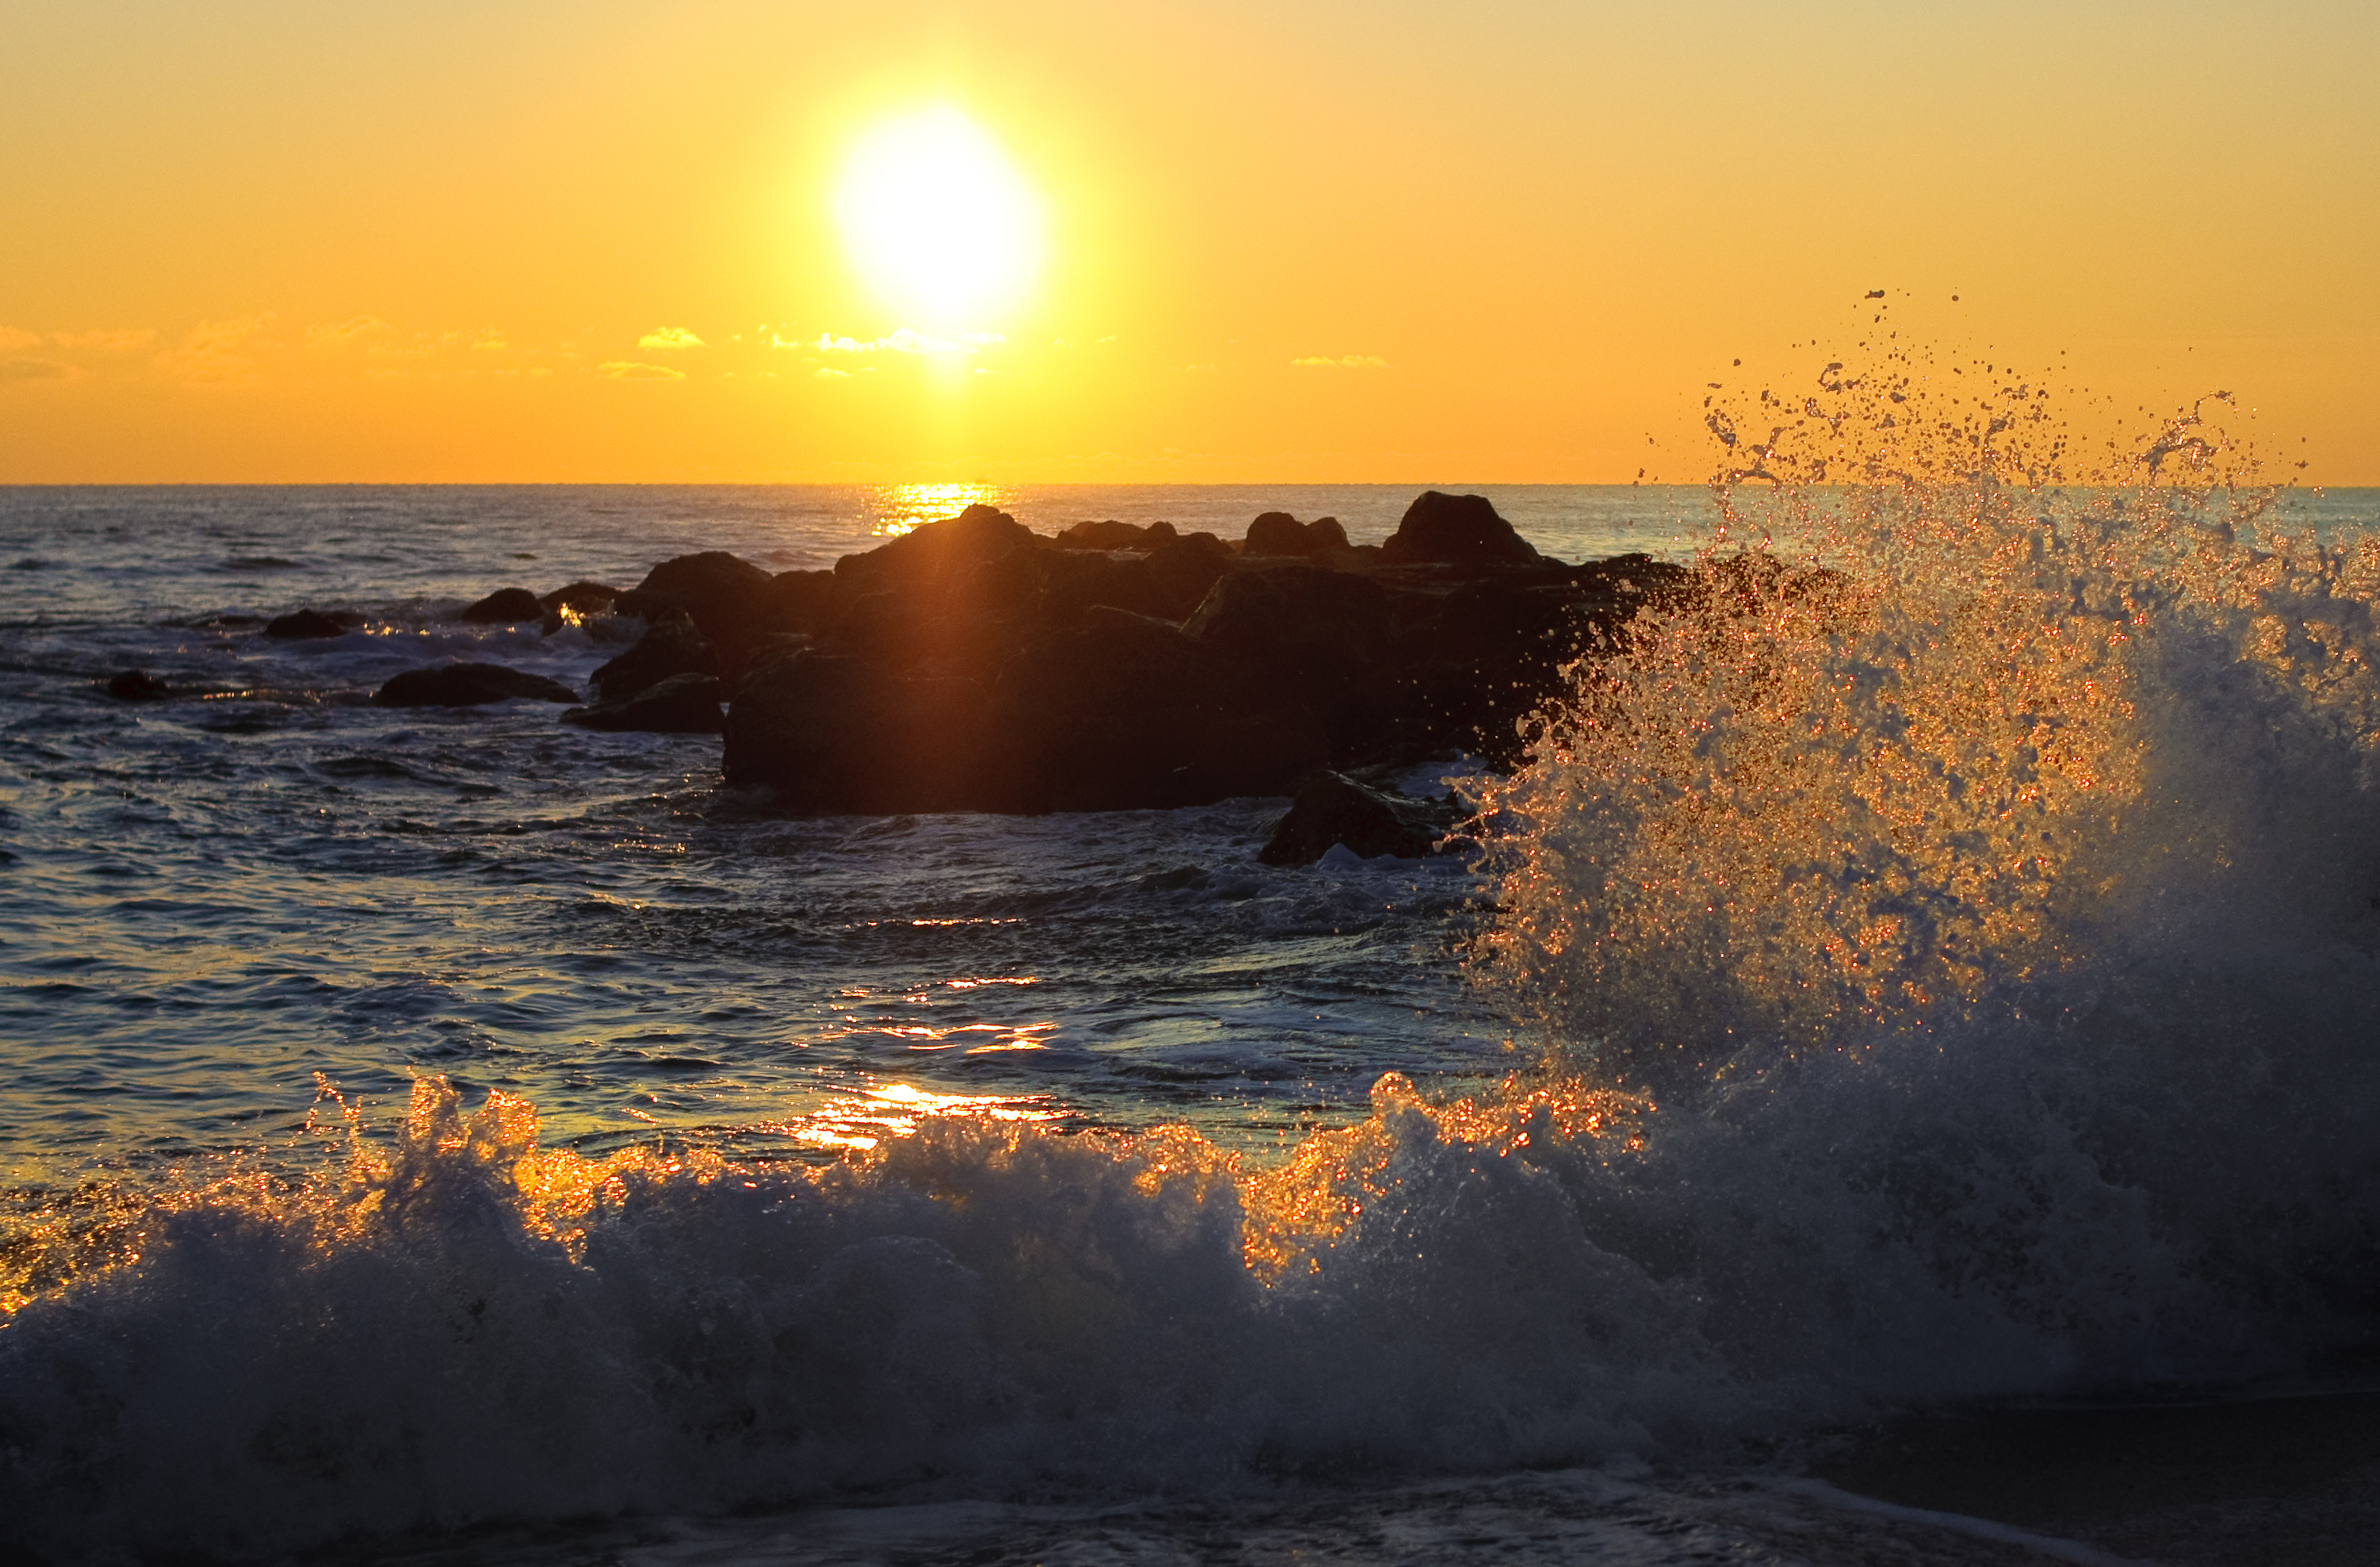 フリー写真素材 自然 風景 海 海岸 波 朝日 朝焼け 日の出 アメリカ合衆国 画像素材なら 無料 フリー写真素材のフリーフォト